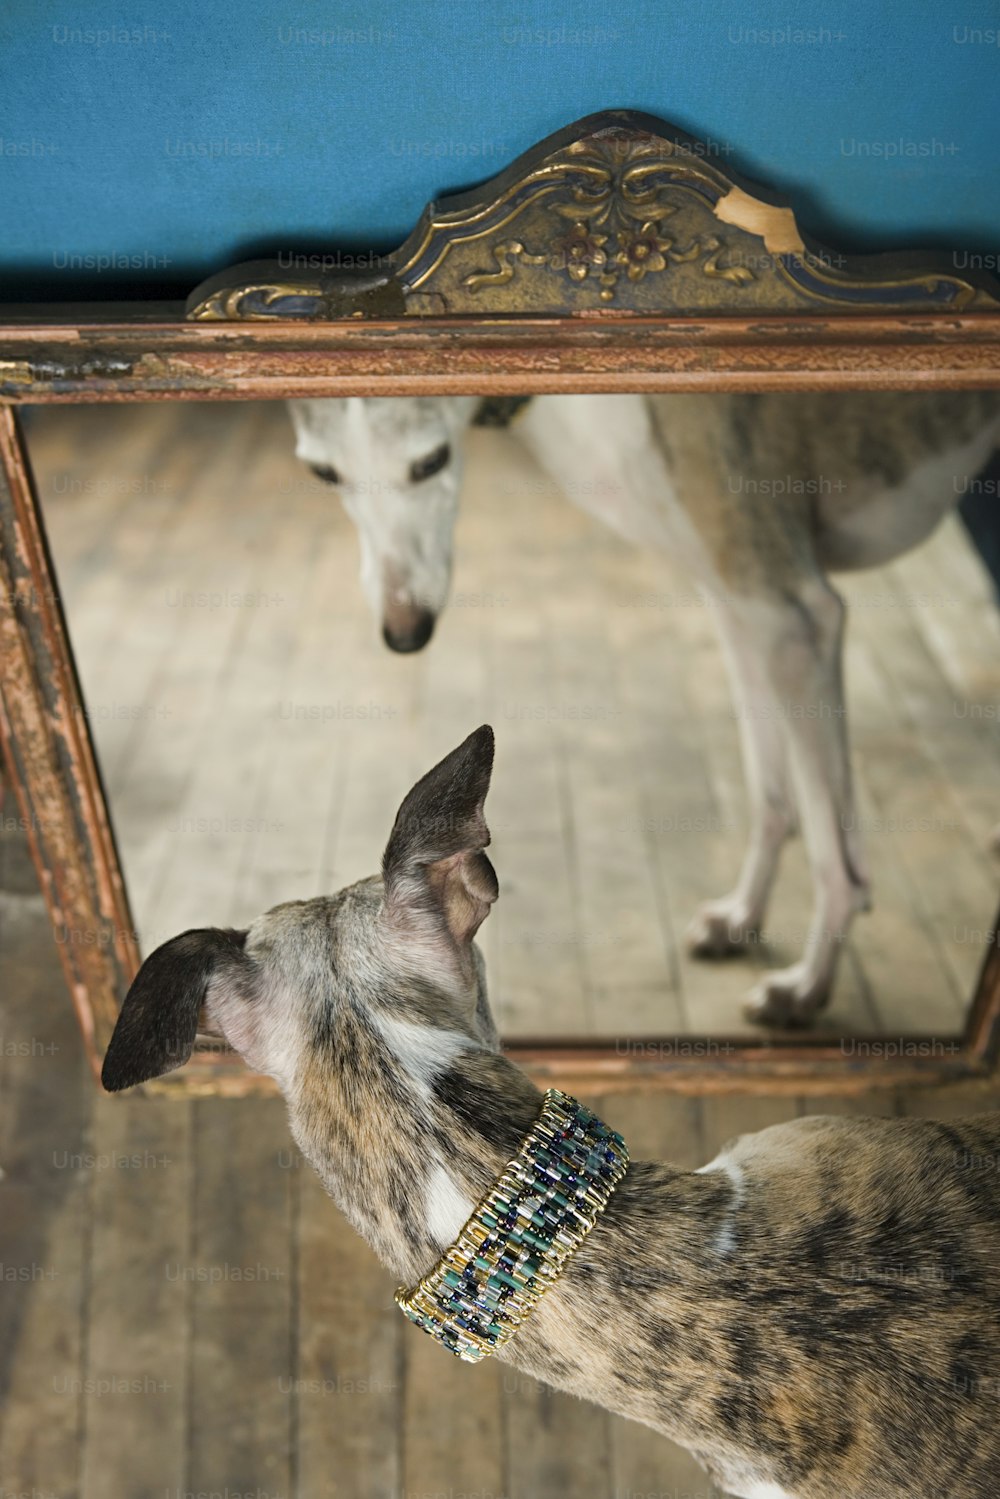 Un perro mirando su reflejo en un espejo